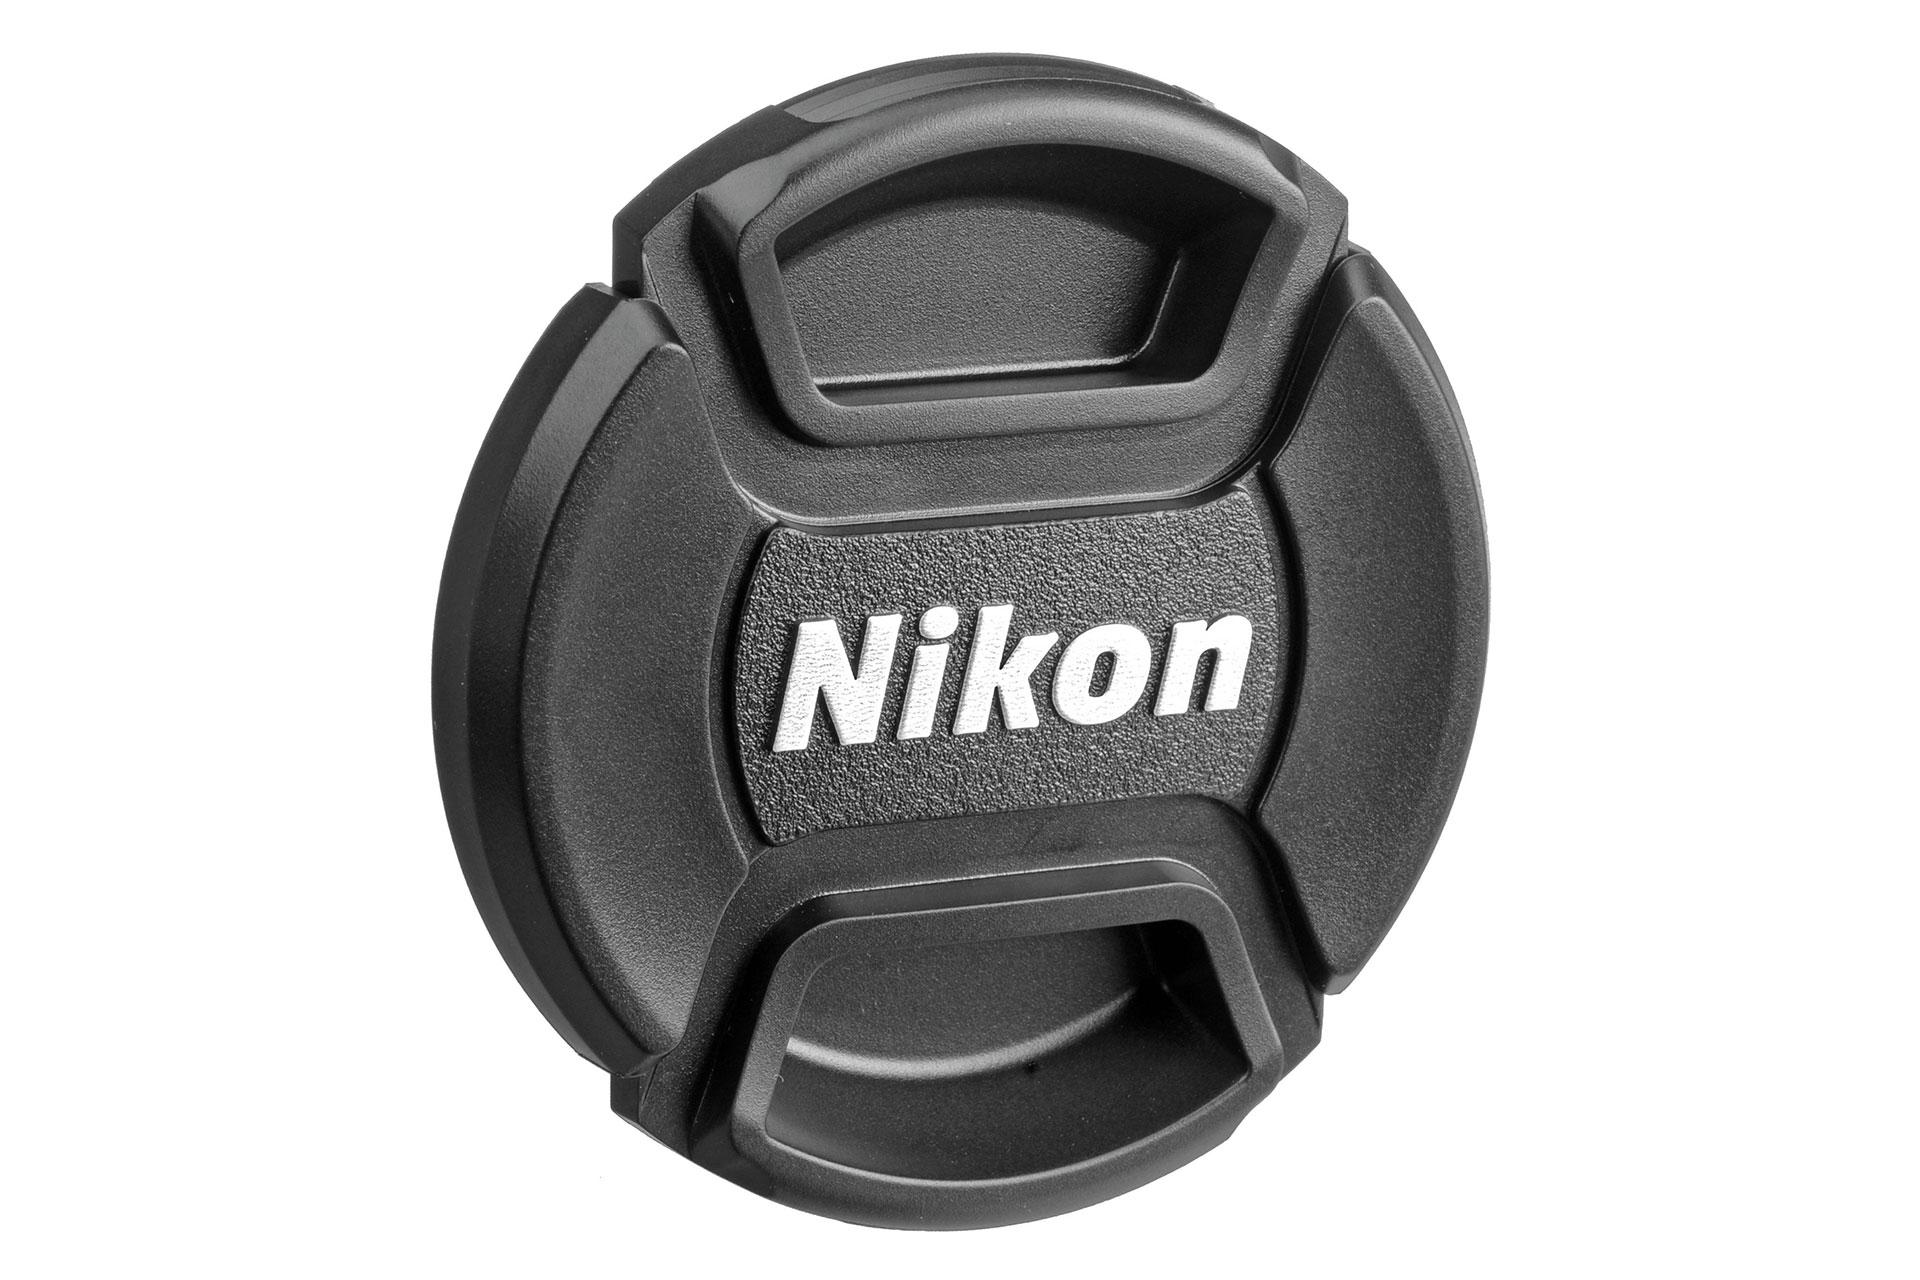 Nikon AF Nikkor 28mm f/2.8D